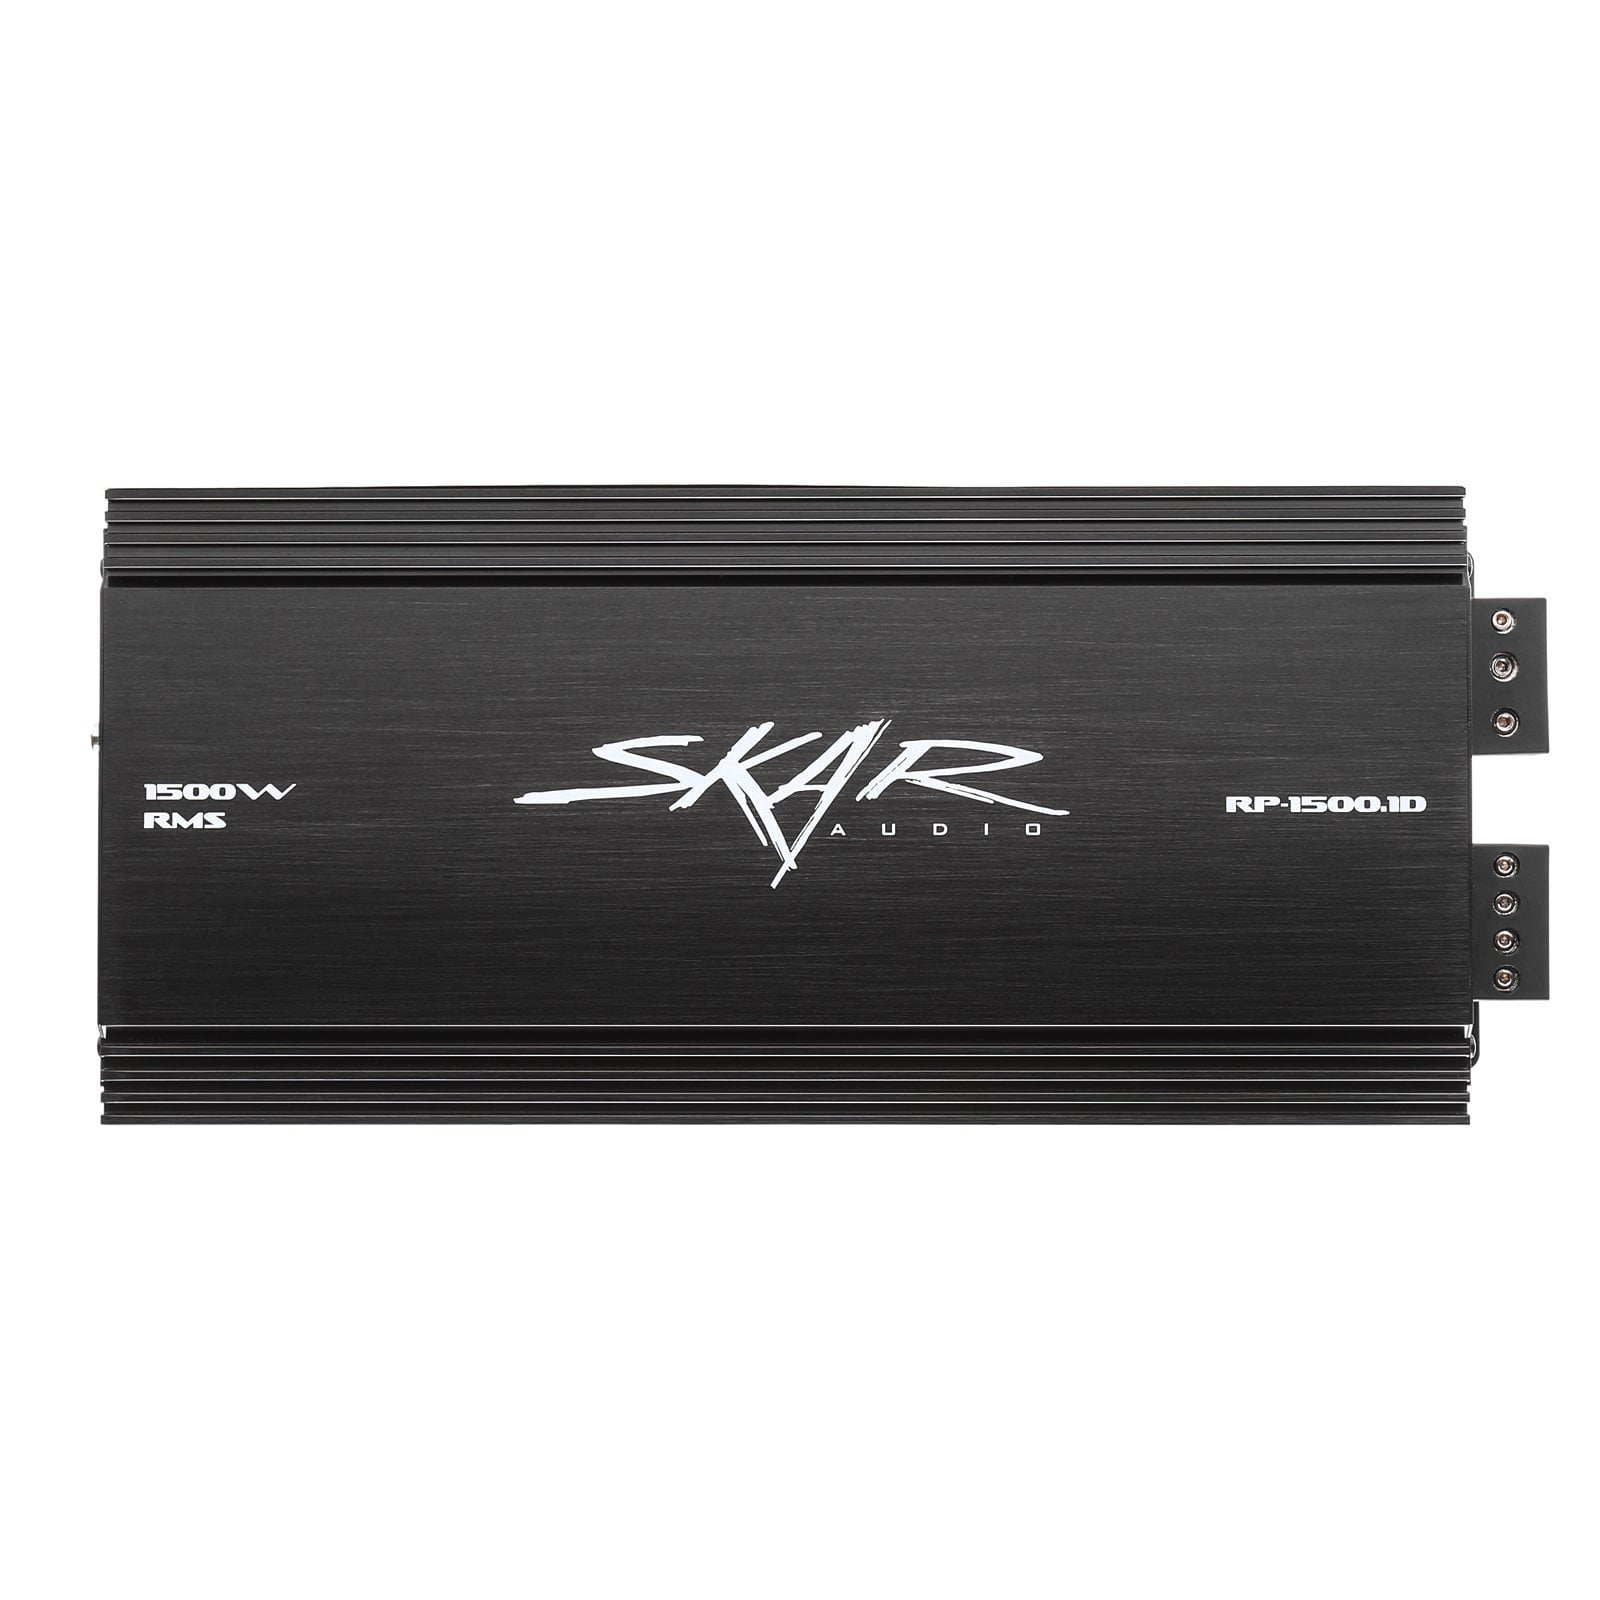 Skar Audio RP-1500.1D 1,500 Watt Class D Monoblock Car Amplifier - Front View